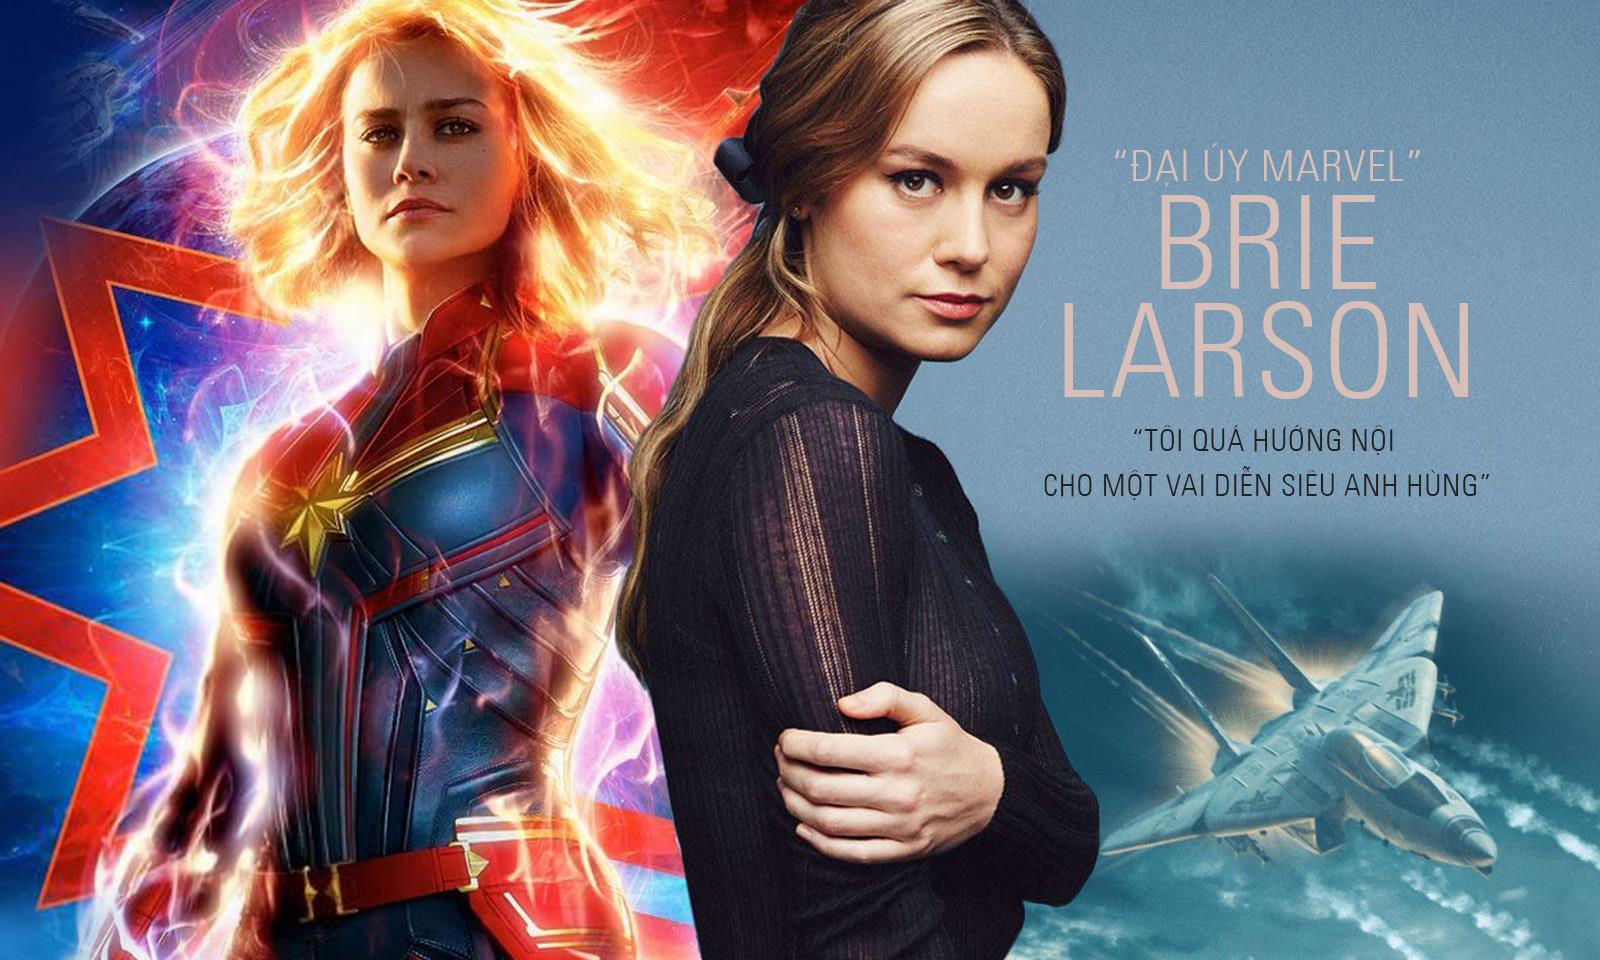 “Đại úy Marvel” Brie Larson: “Tôi quá hướng nội cho một vai diễn siêu anh hùng”